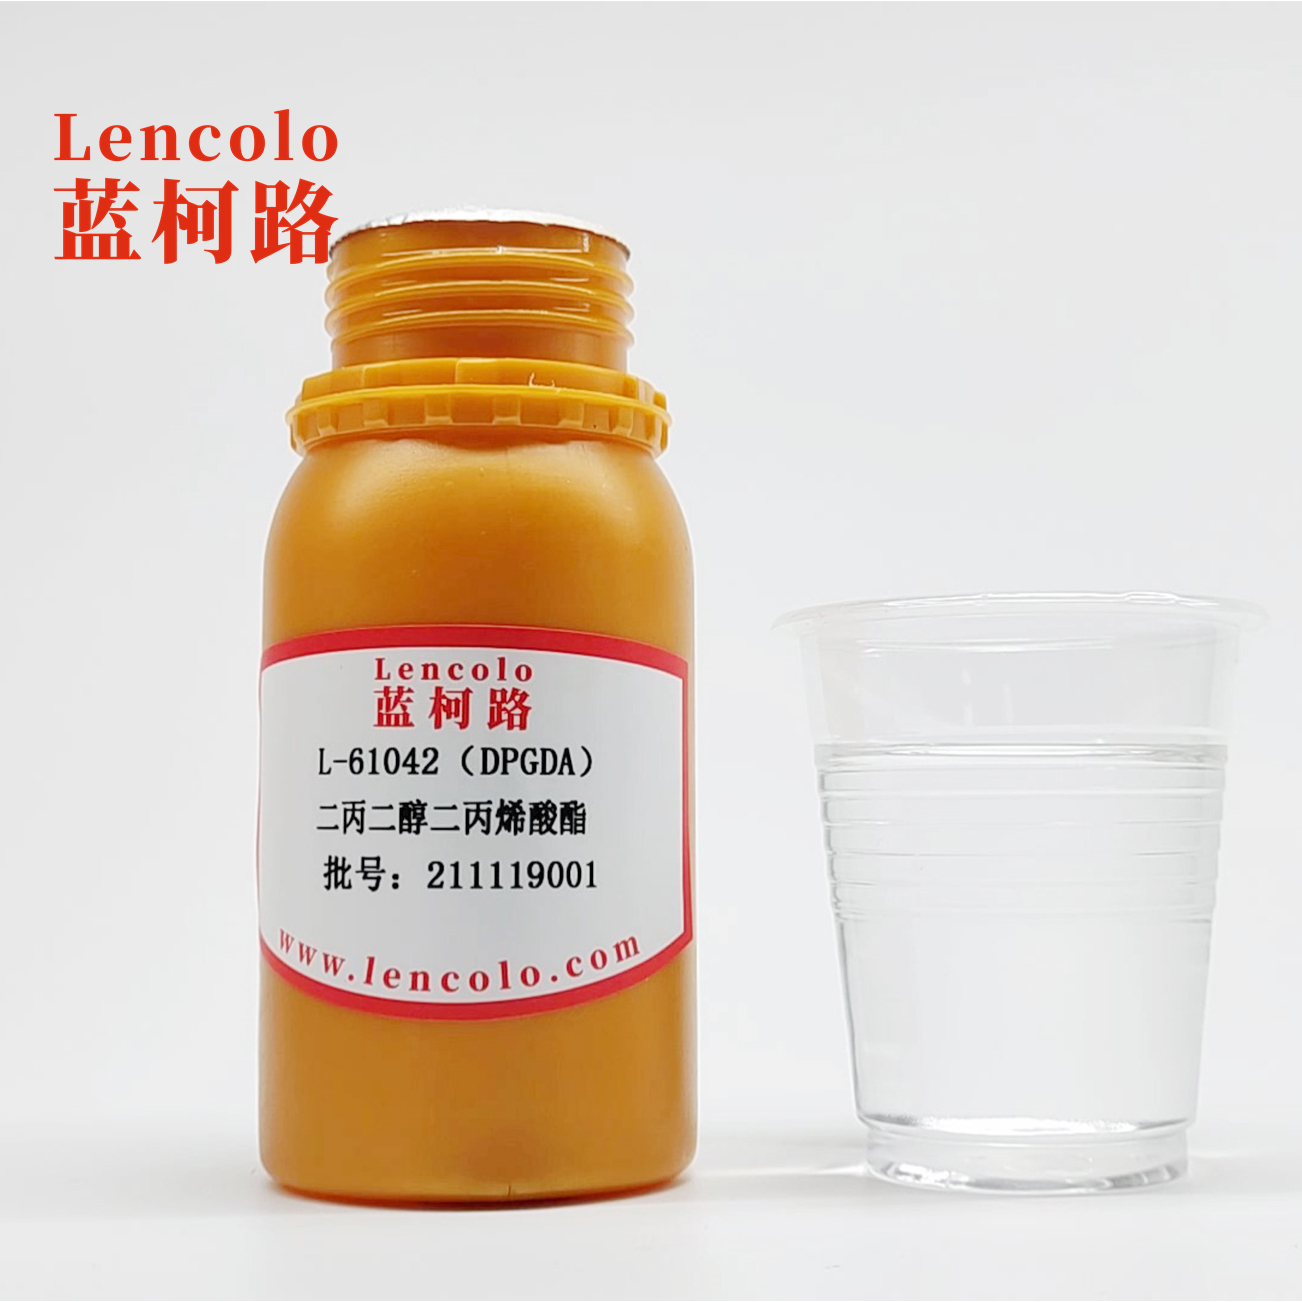 L-61042 (DPGDA) Dipropylene Glycol Diacrylate